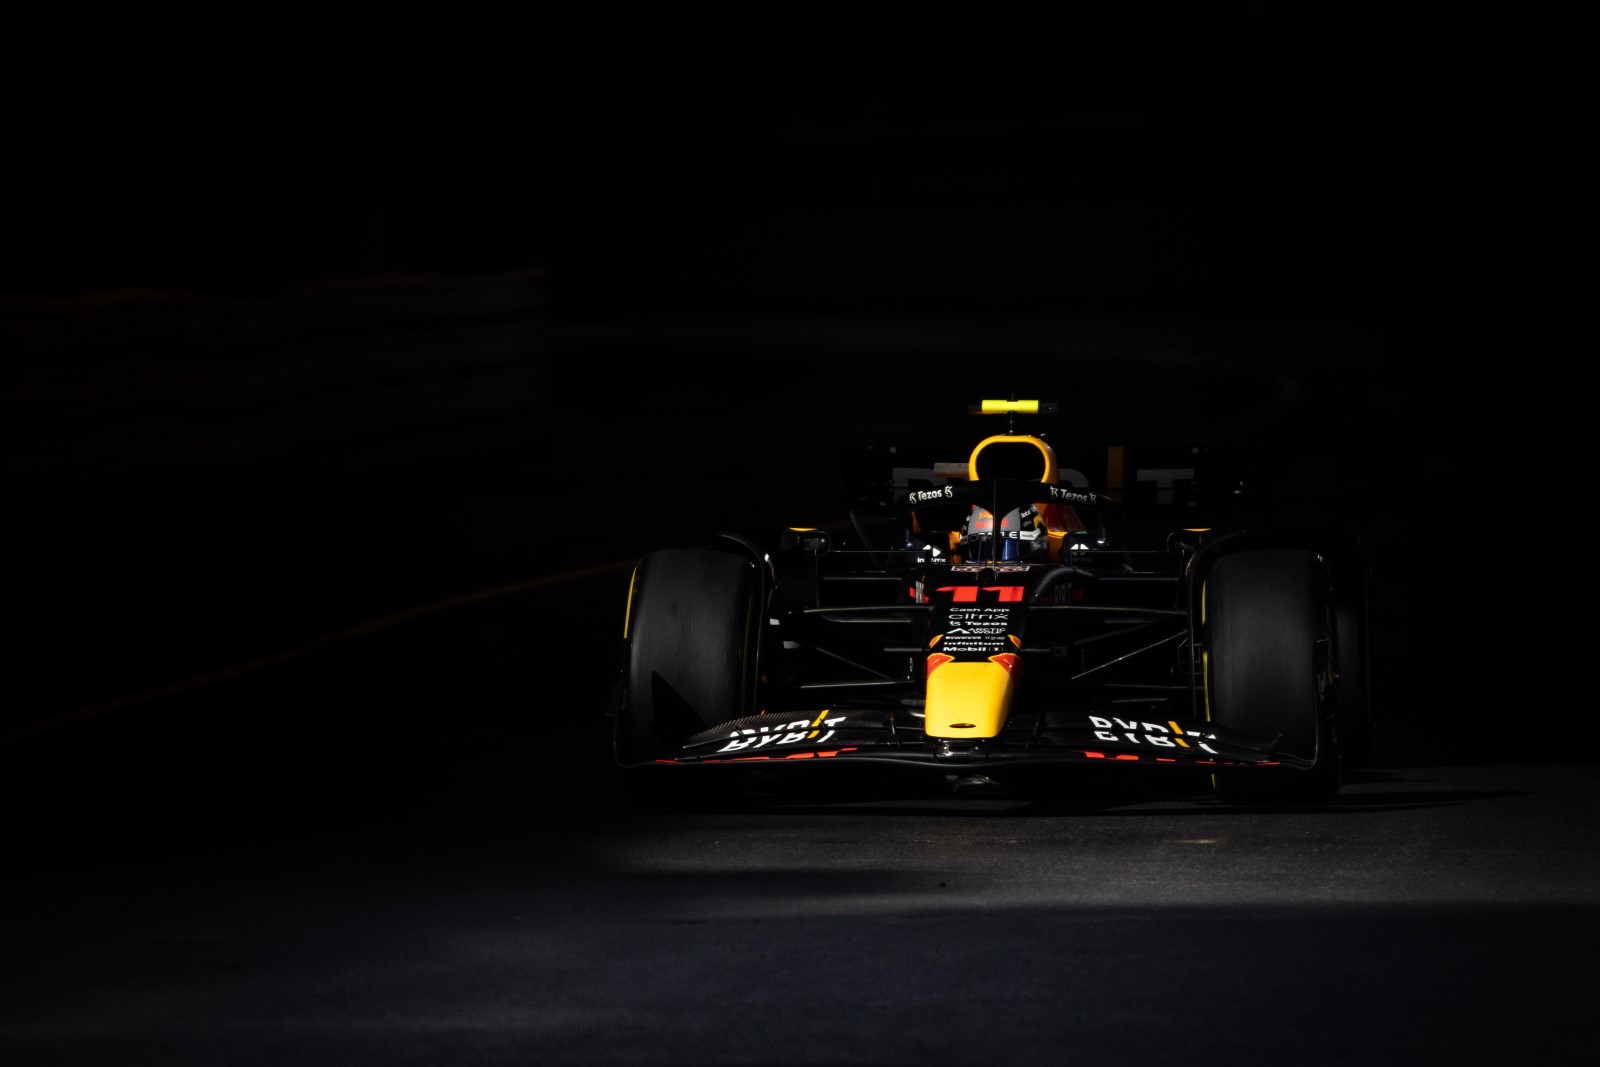 Perez beats Leclerc to top final Monaco practice session